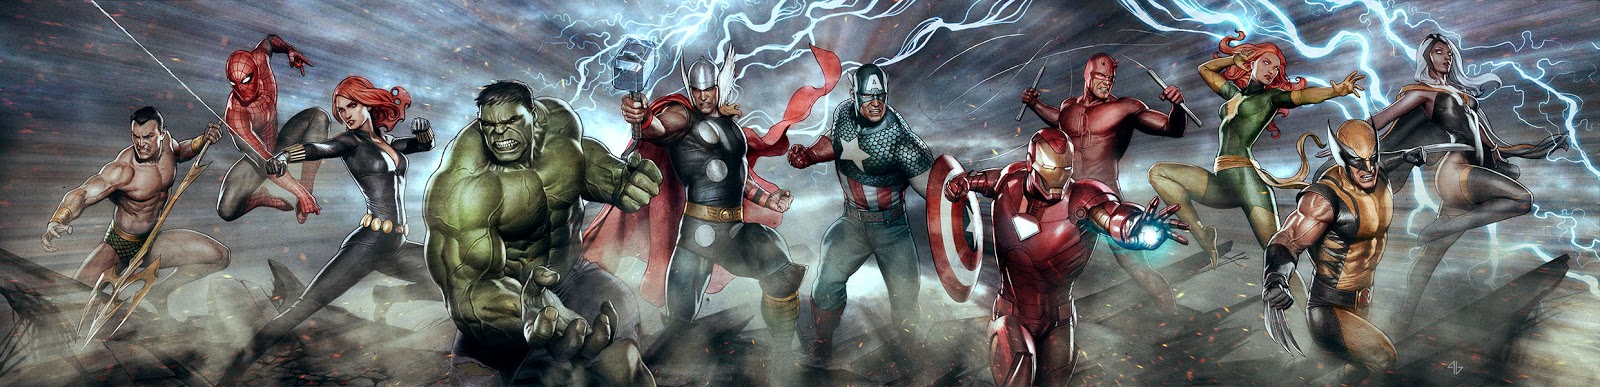 Супергерои Marvel №2 - Мстители